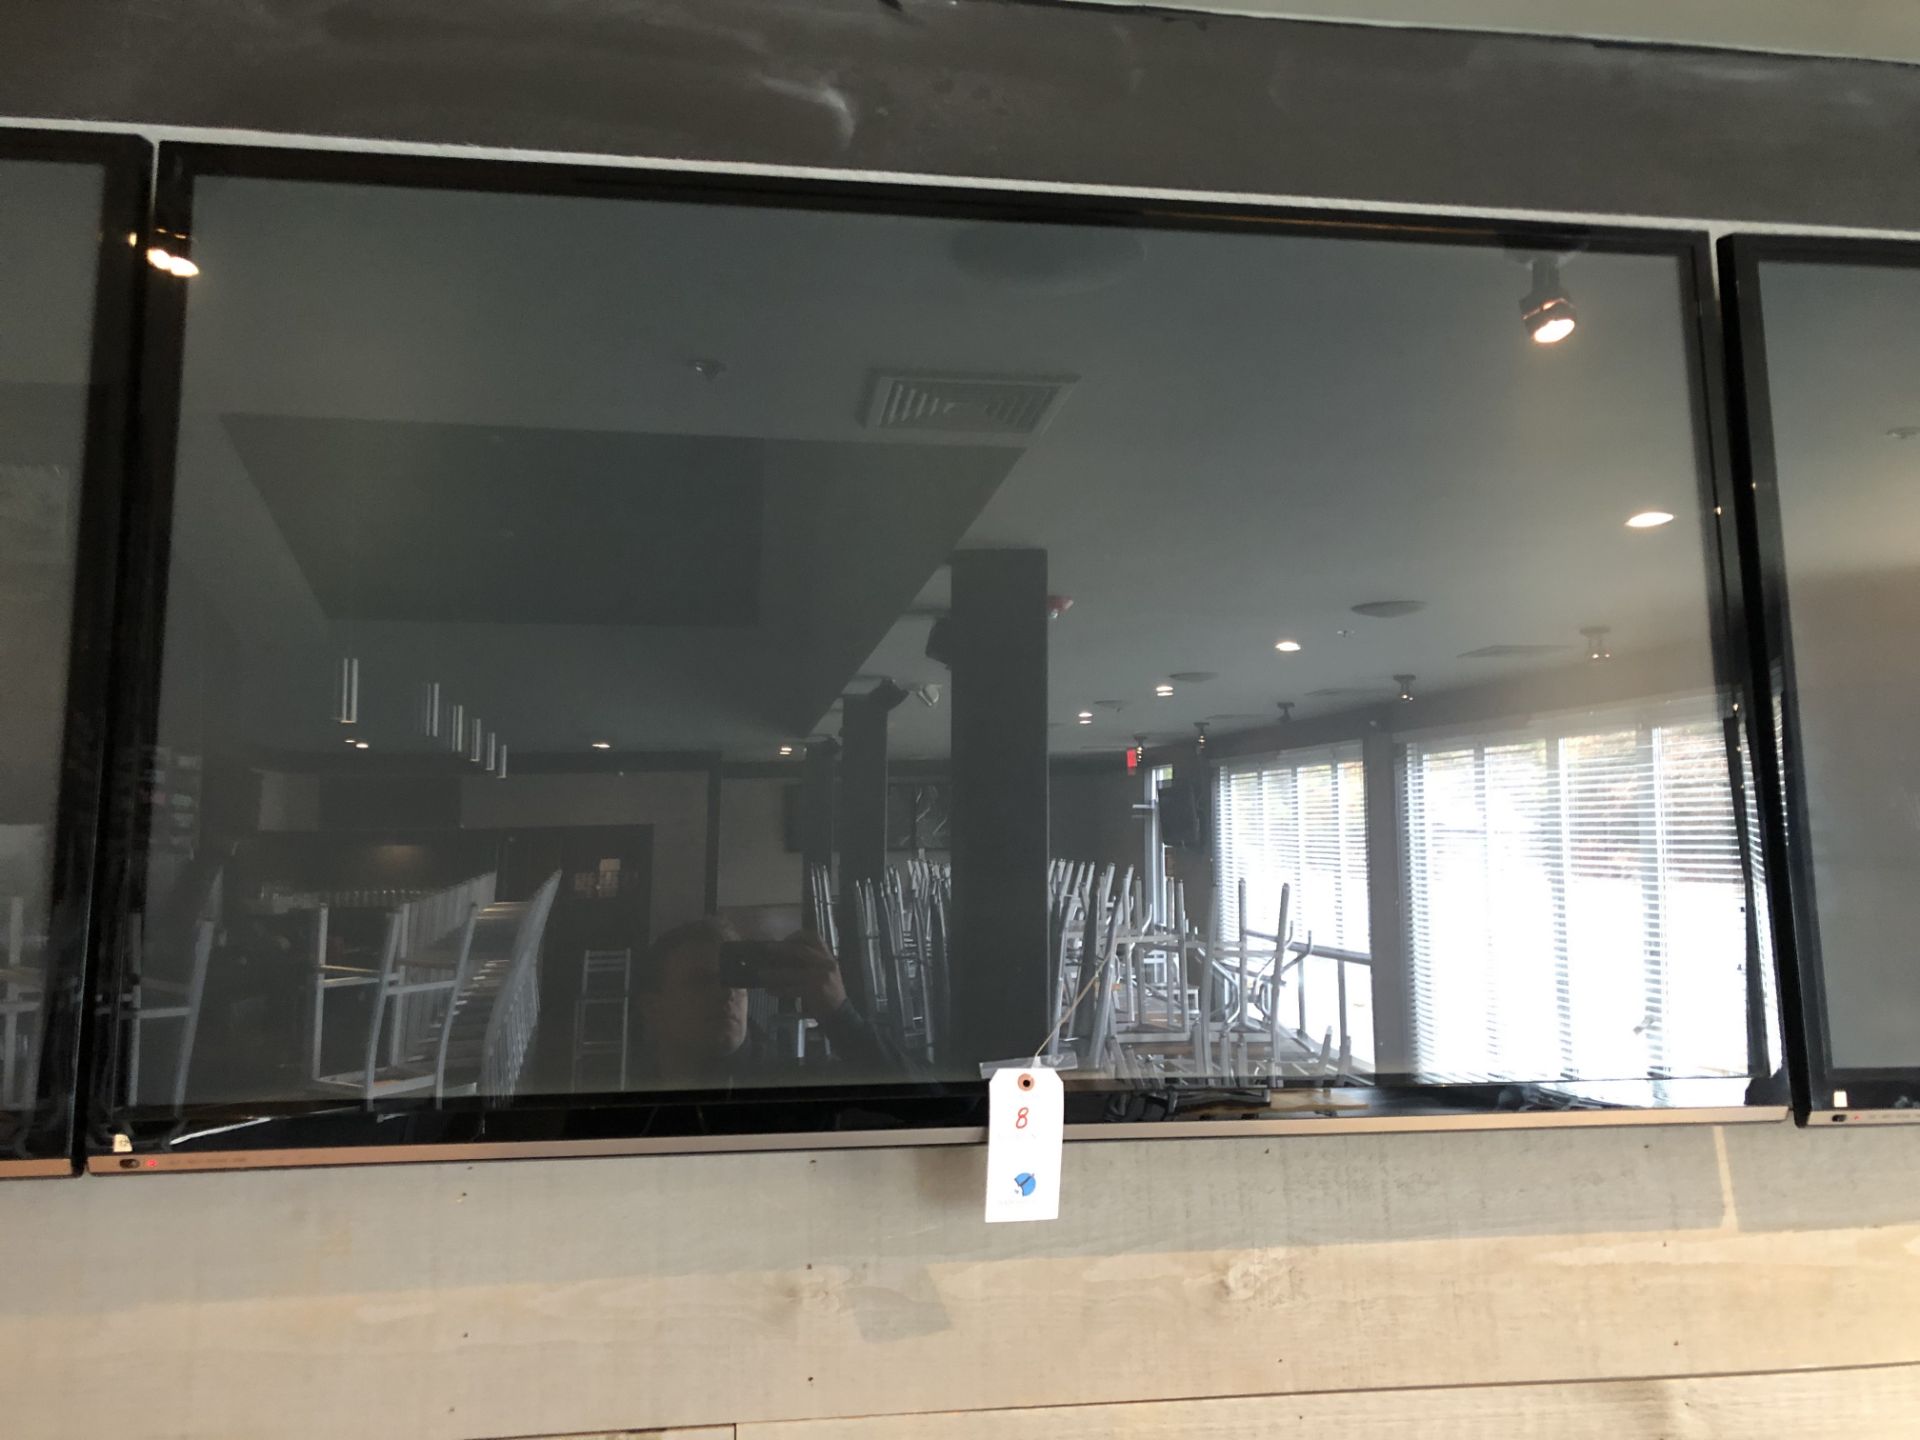 LG 62" Wall Mounted Flat Panel TV